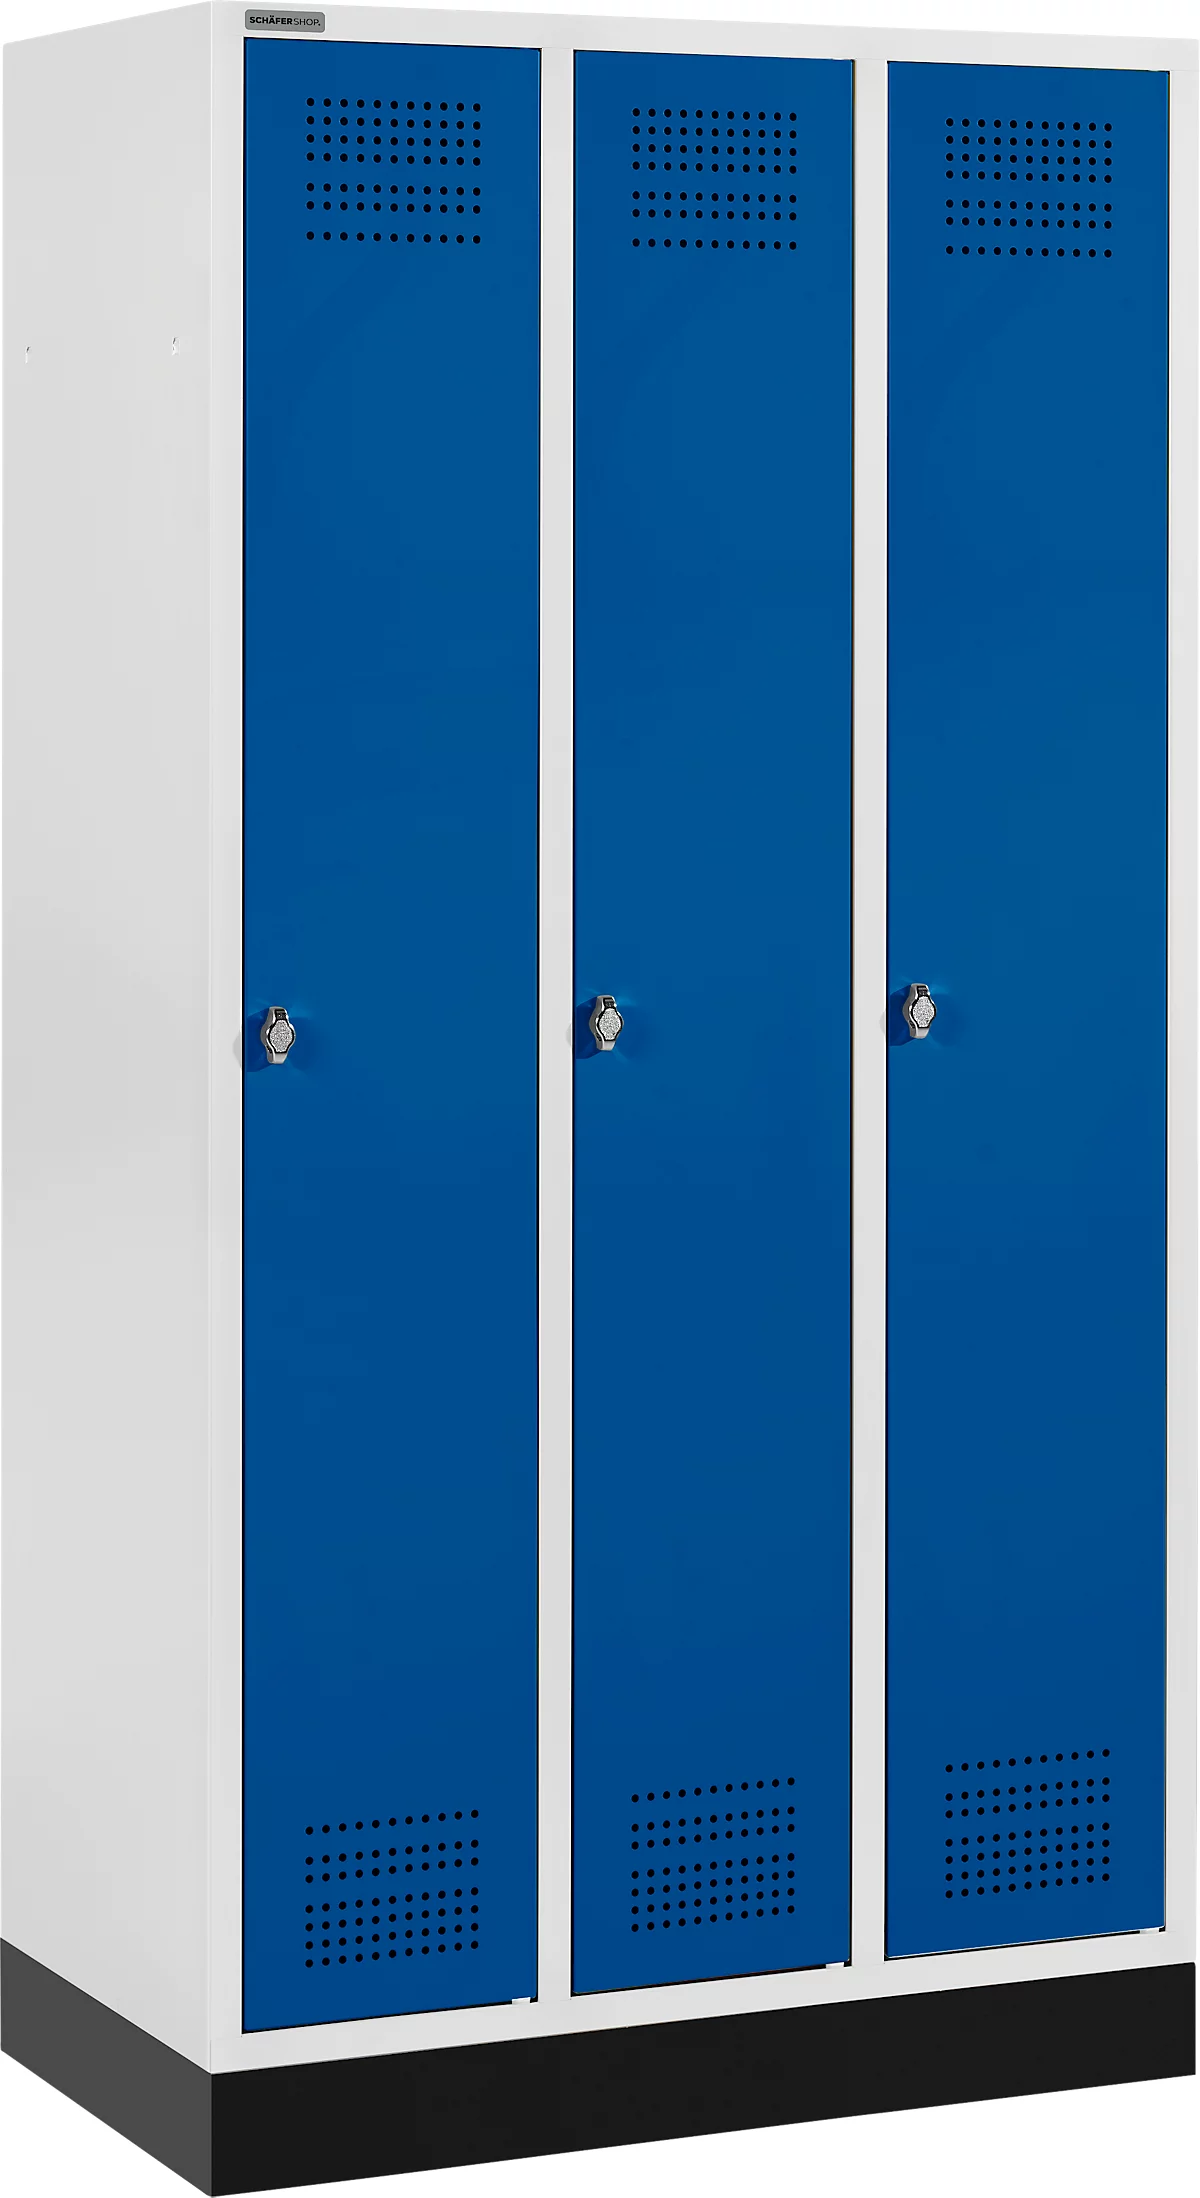 Schäfer Shop Genius Kledinglocker met fitting, 3 compartimenten, veiligheidsdraaigrendelslot, lichtgrijs/gentiaanblauw